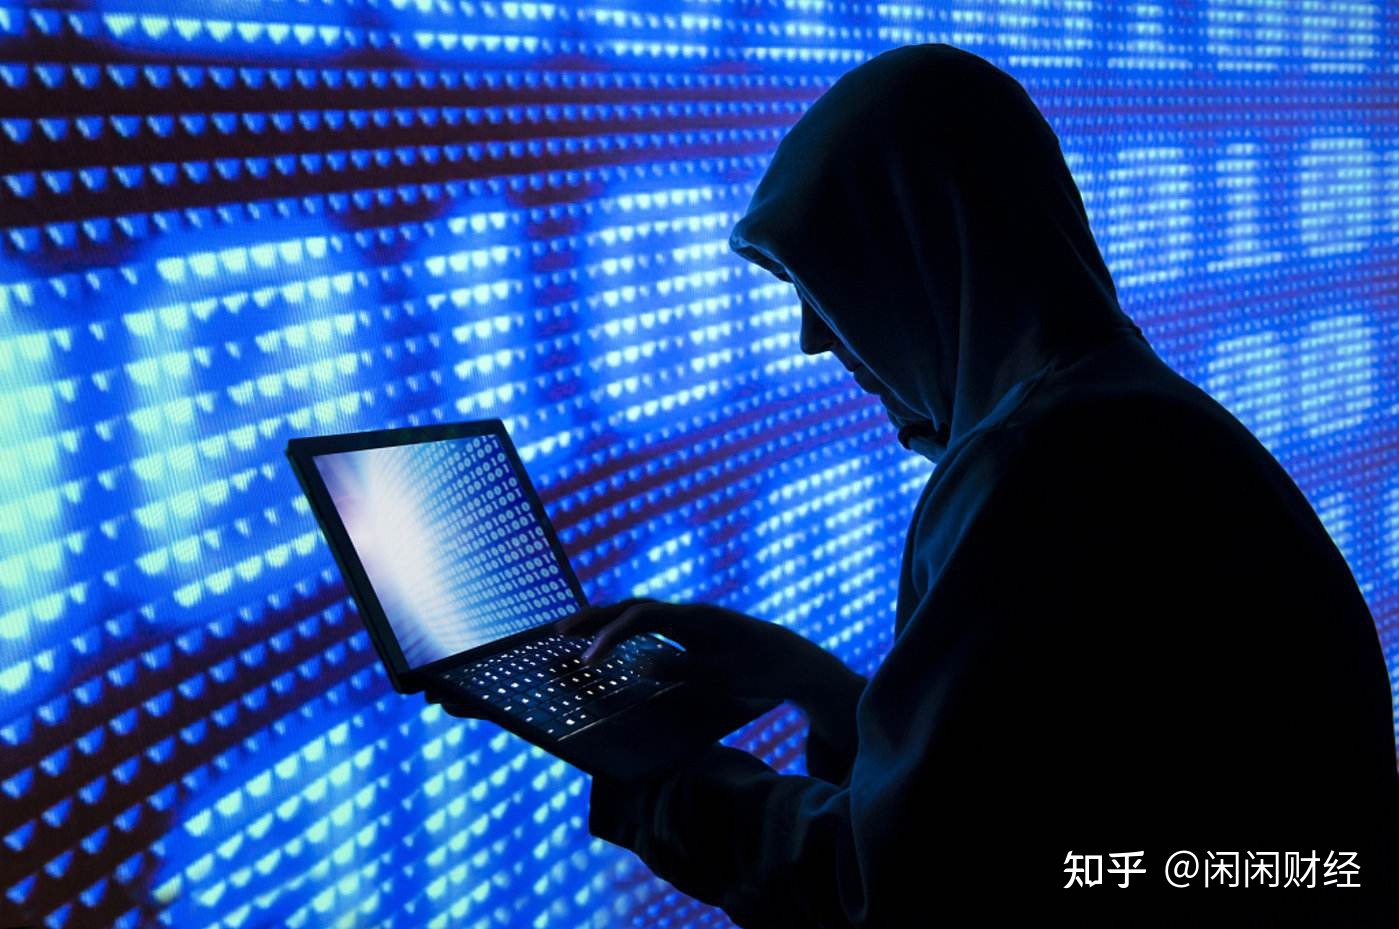 希拉里团队电脑疑遭俄黑客攻击(希拉里反思败选因素怪罪自己fbi局长和俄罗斯)